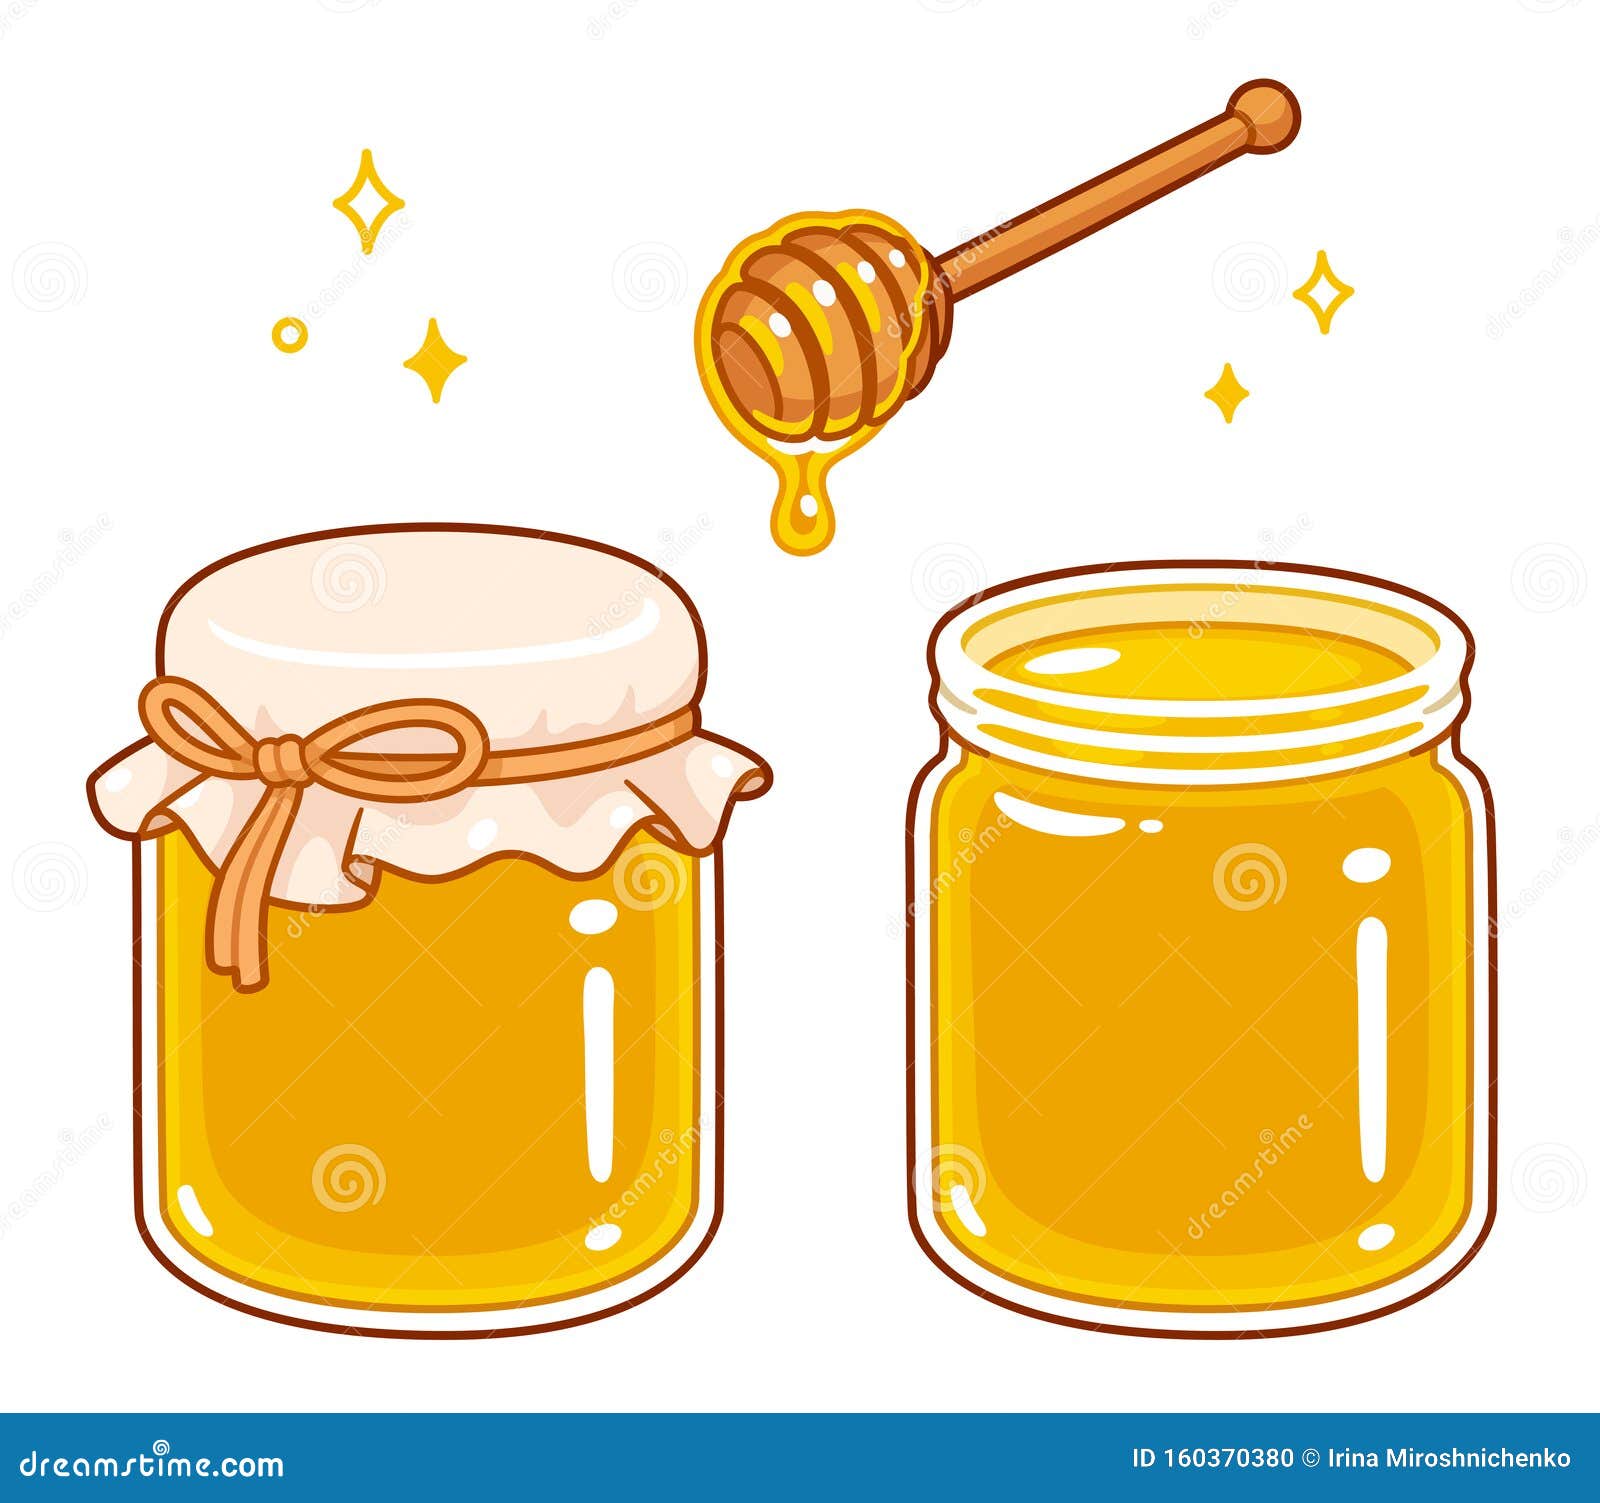 Cartoon honey jar set stock vector. Illustration of healthy - 160370380